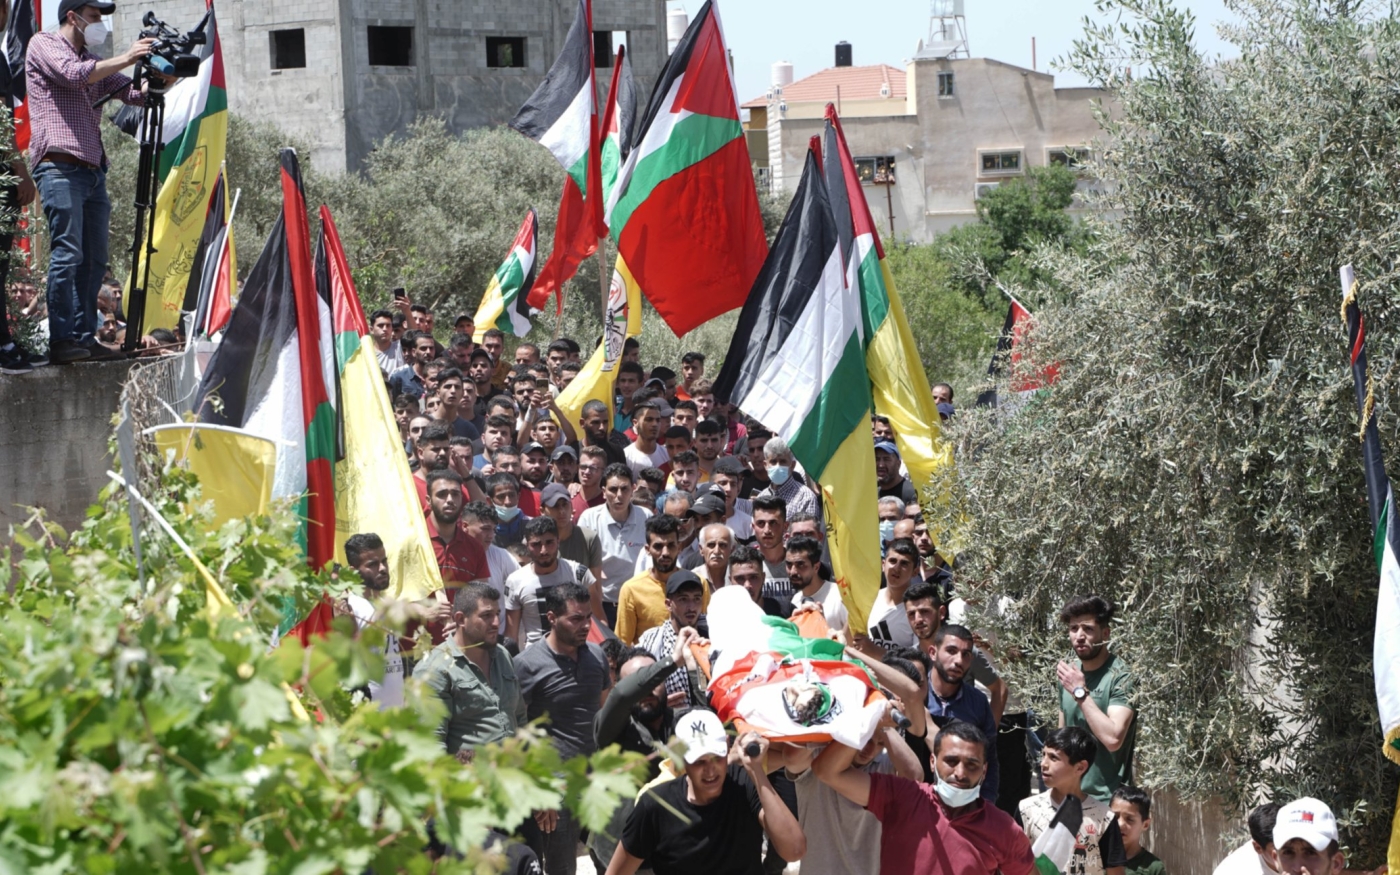 Le corps de Saeed Odeh est porté par des habitants endeuillés dans les rues d’Odala, son village natal (MEE/Akram al-Waara)